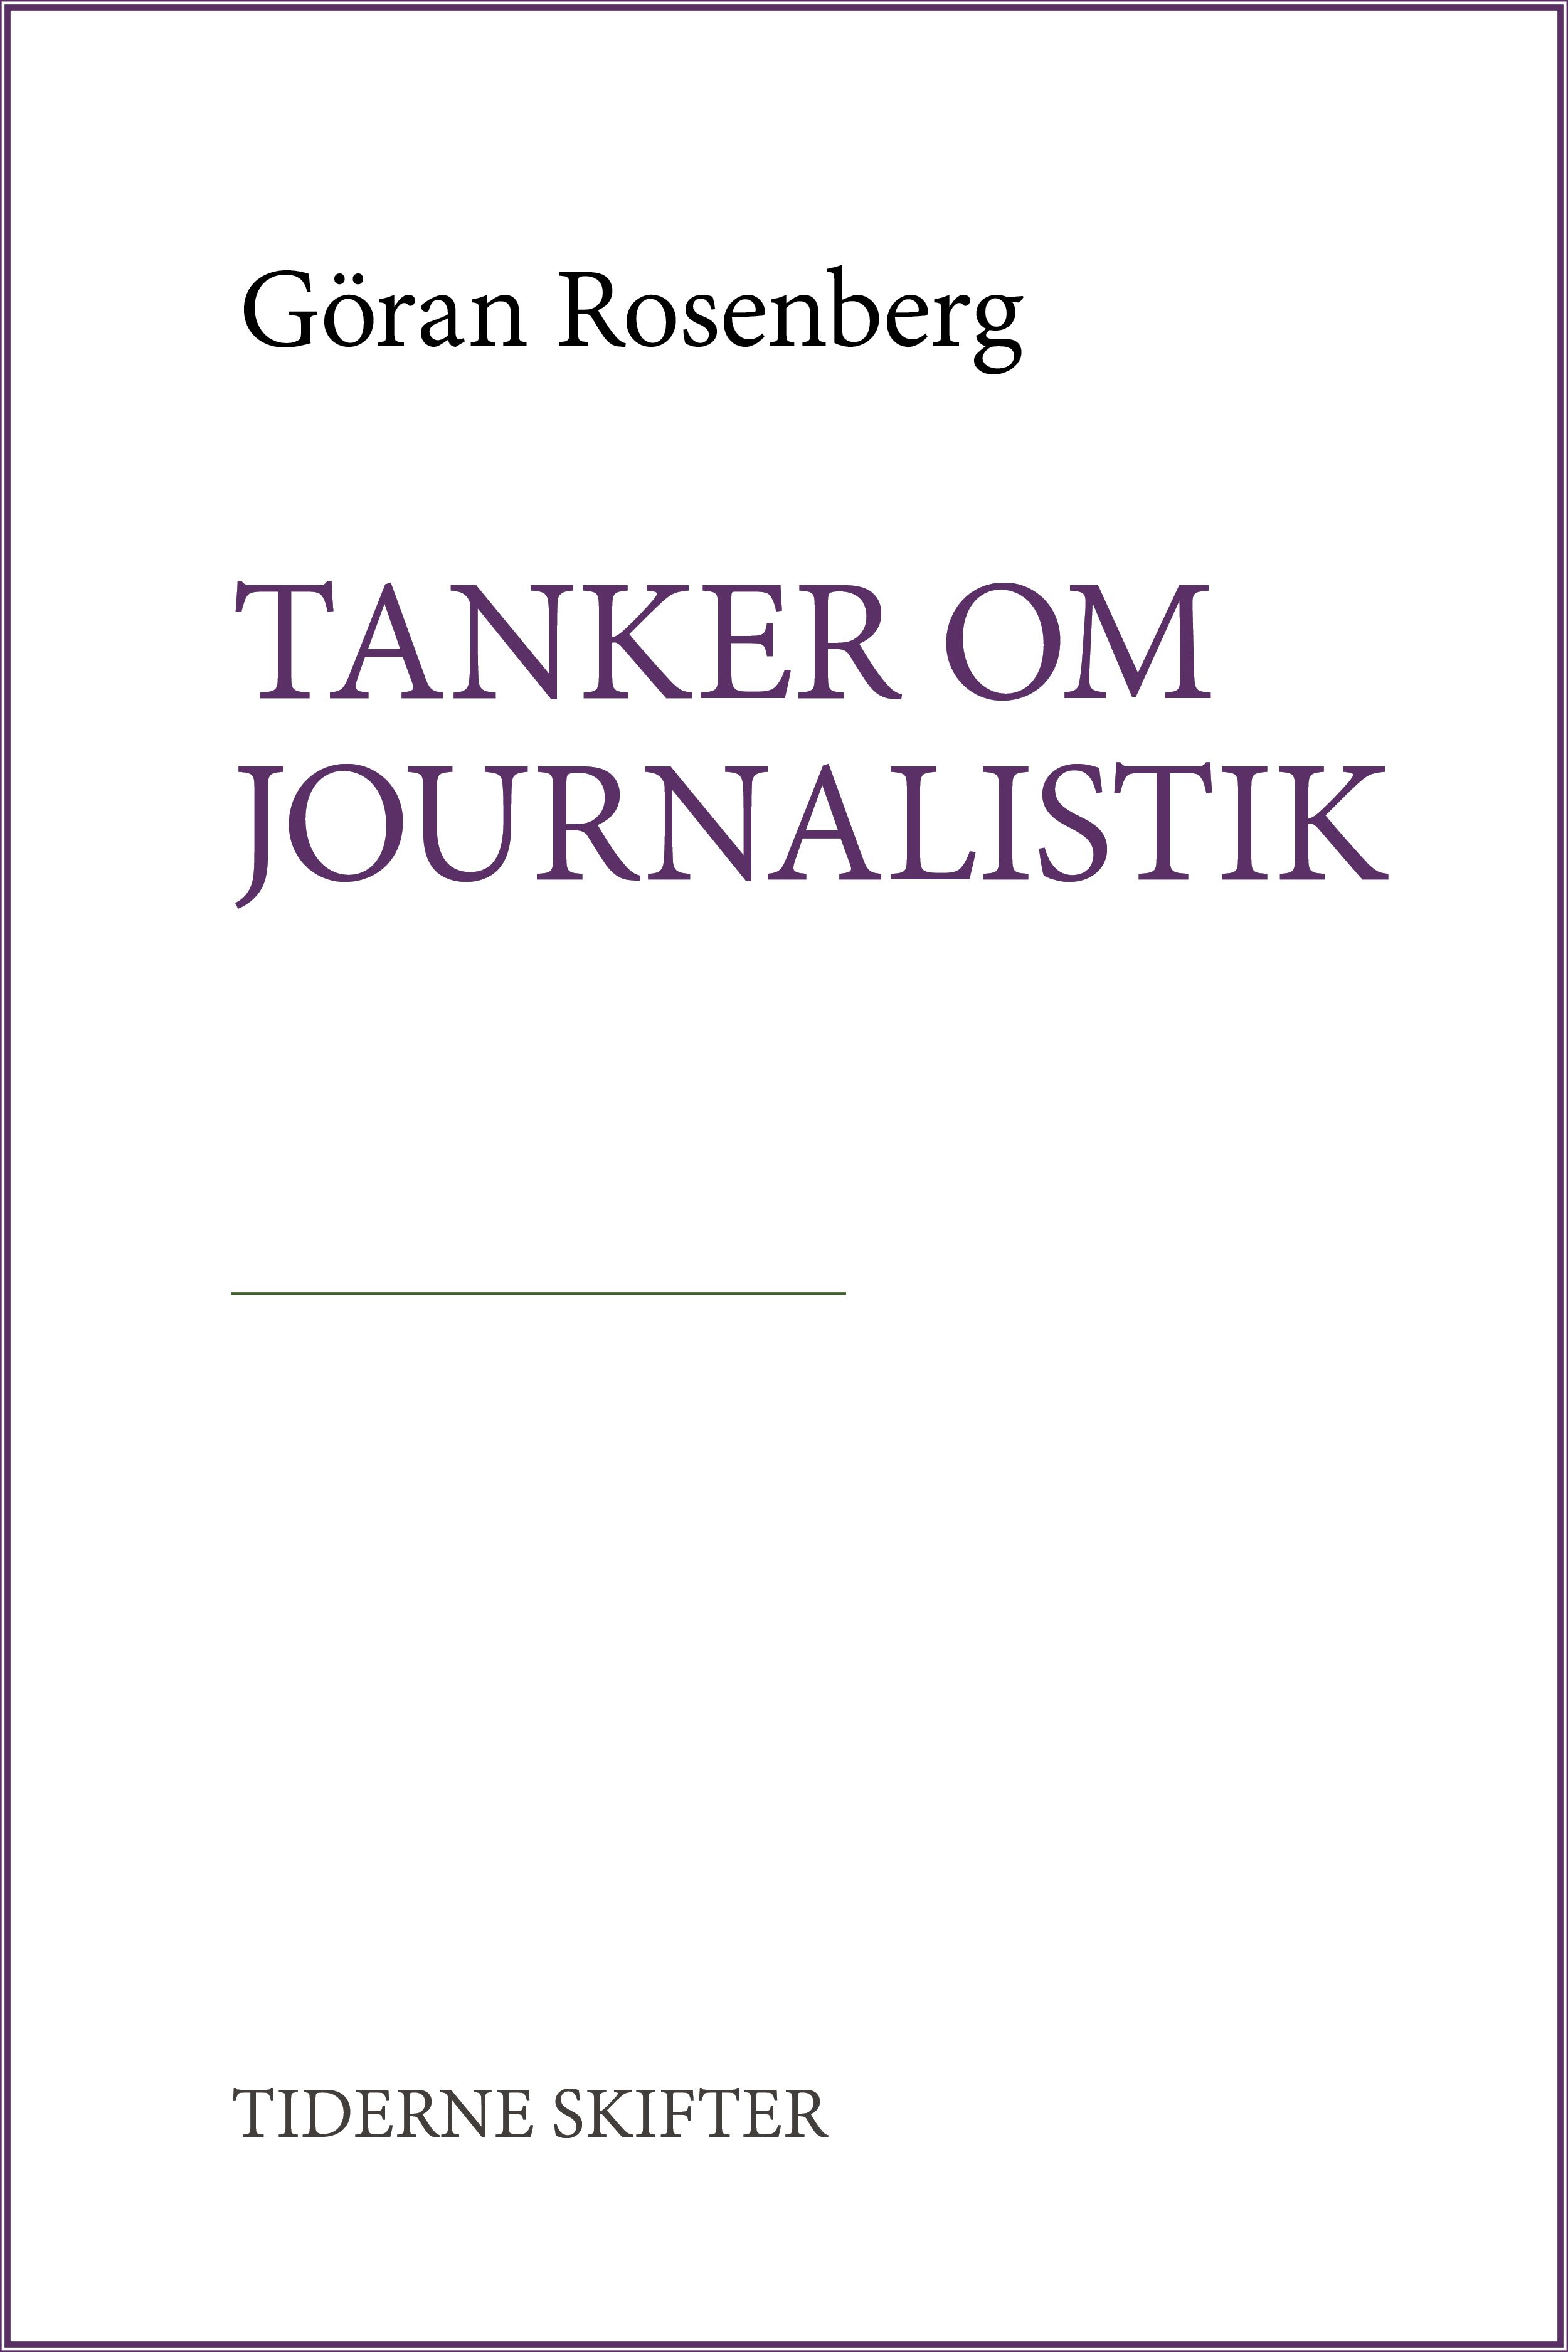 Tanker om journalistik, e-bok av Göran Rosenberg